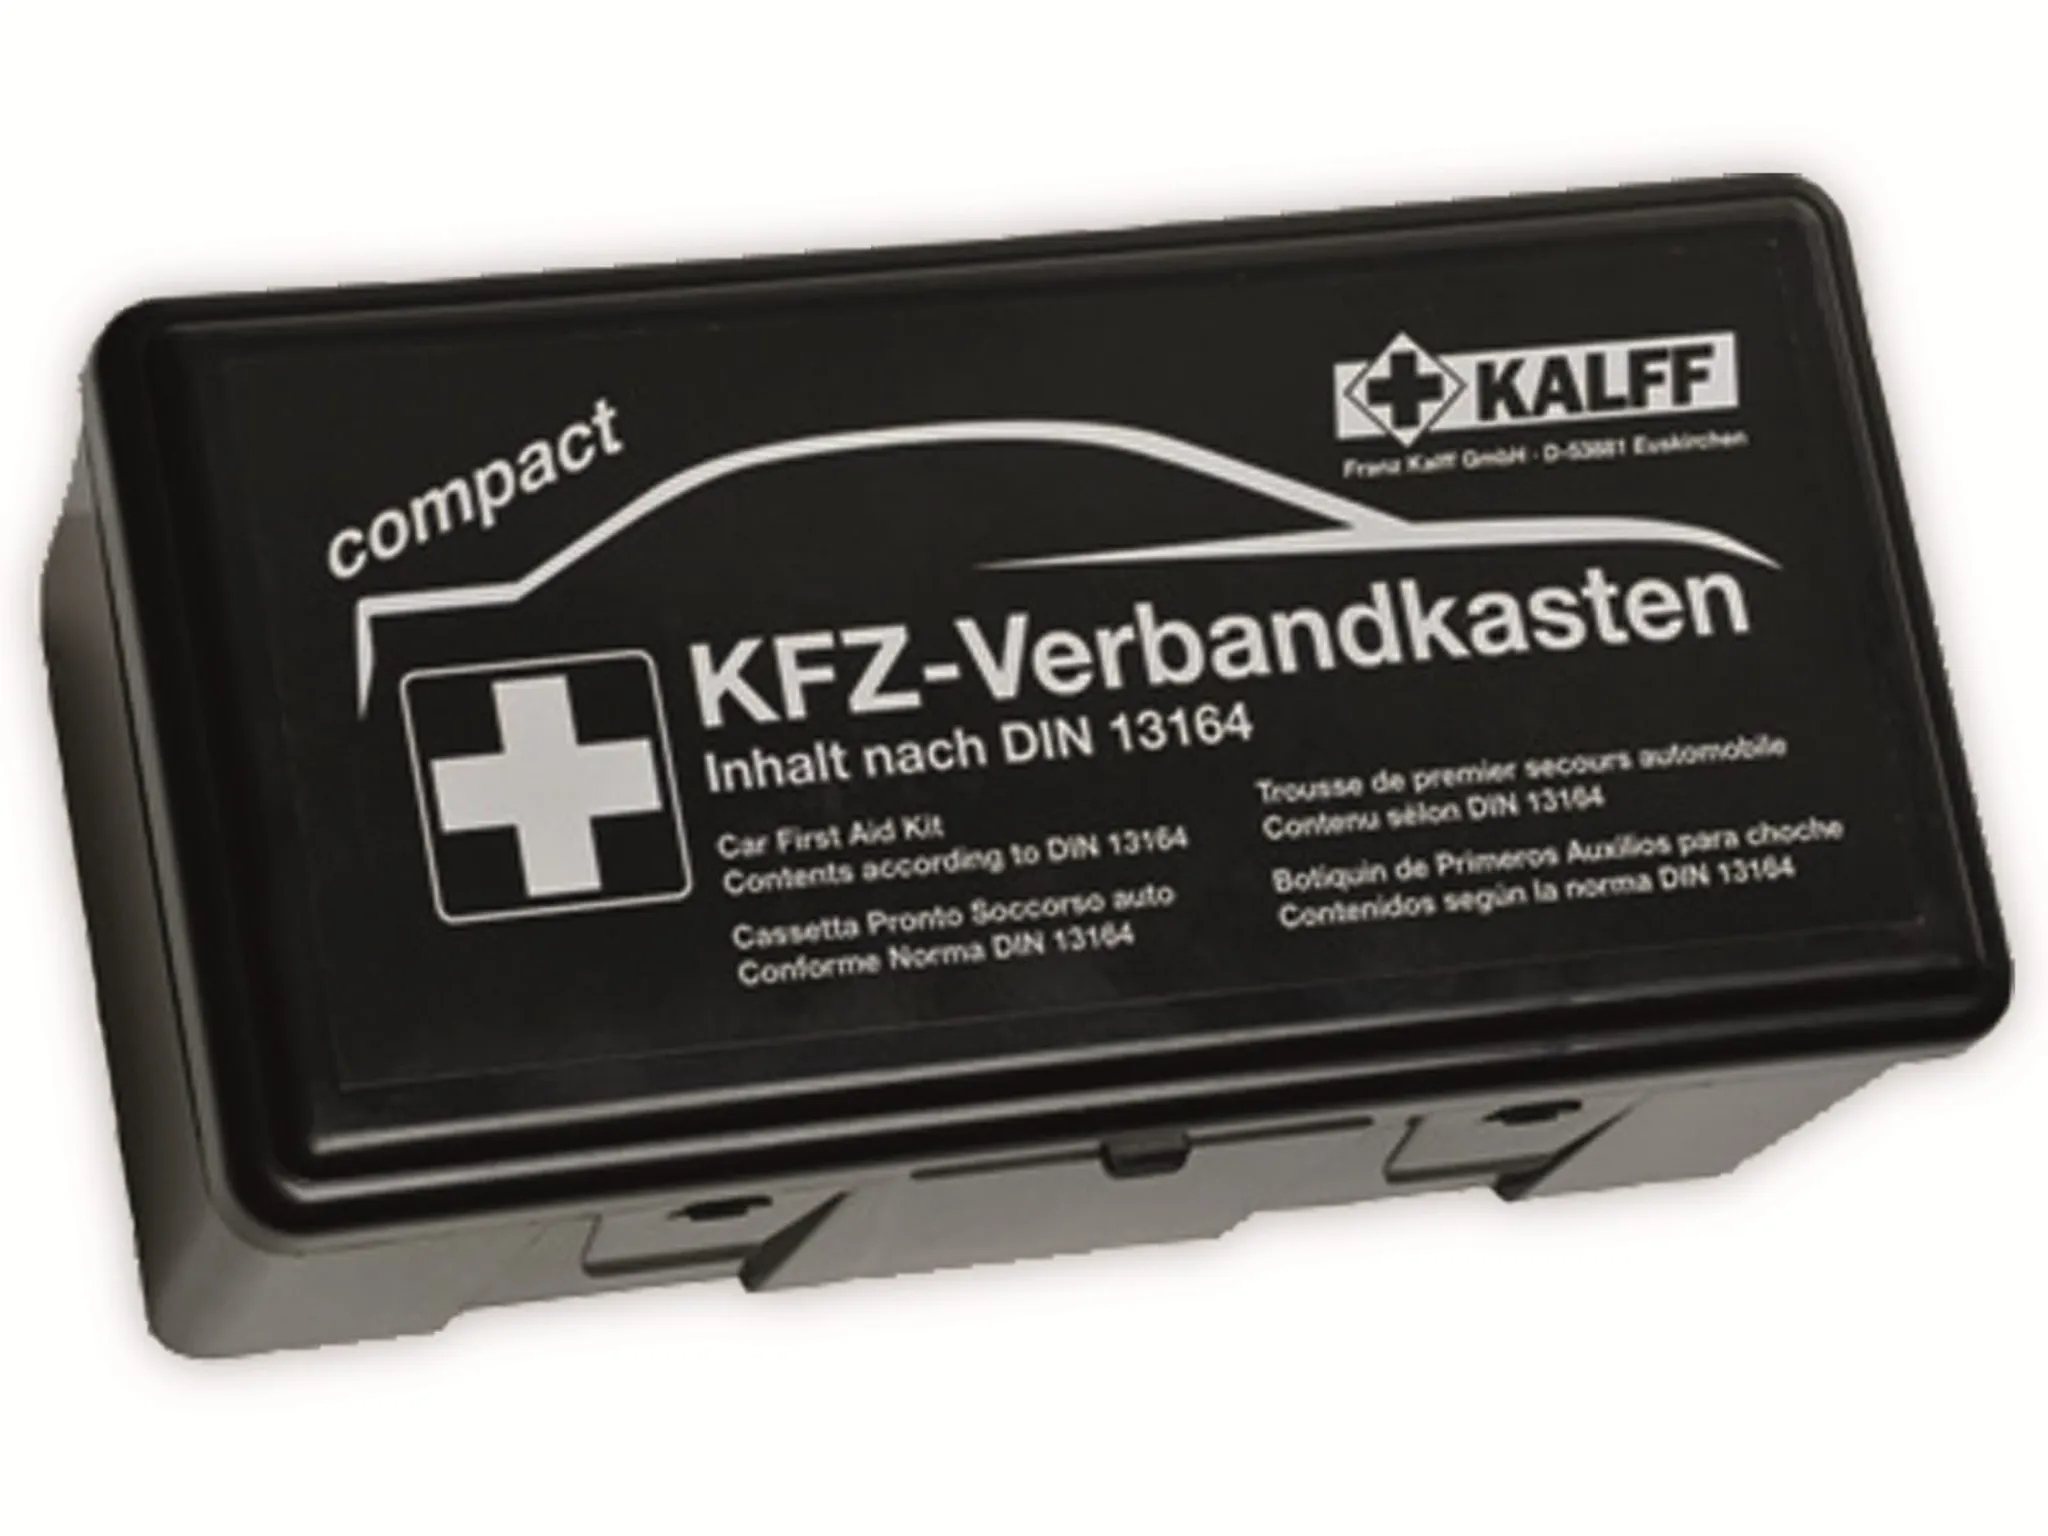 Kalff Kfz-Verbandkasten kompakt DIN 13164:2014 vollwertiges Erste